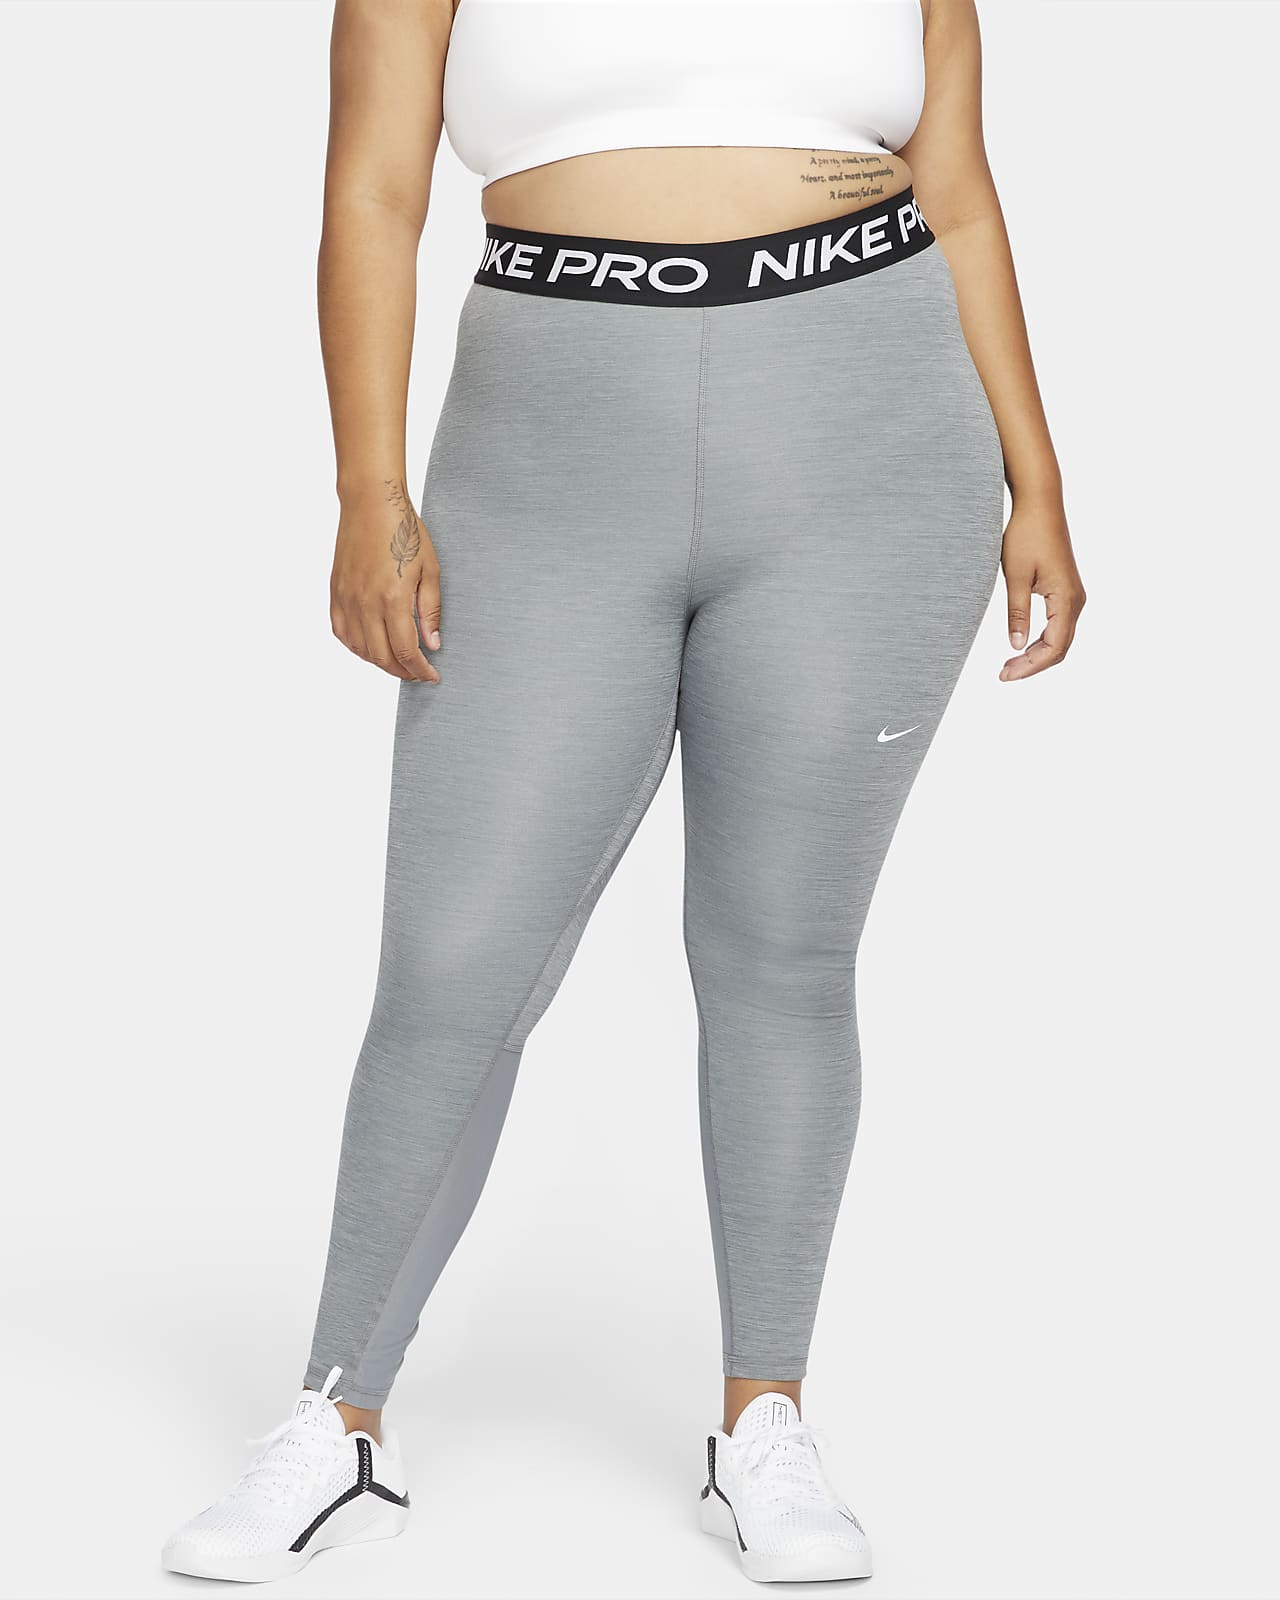 Notorio Alienación Observatorio Leggings para mujer Nike Pro 365 (talla grande). Nike.com